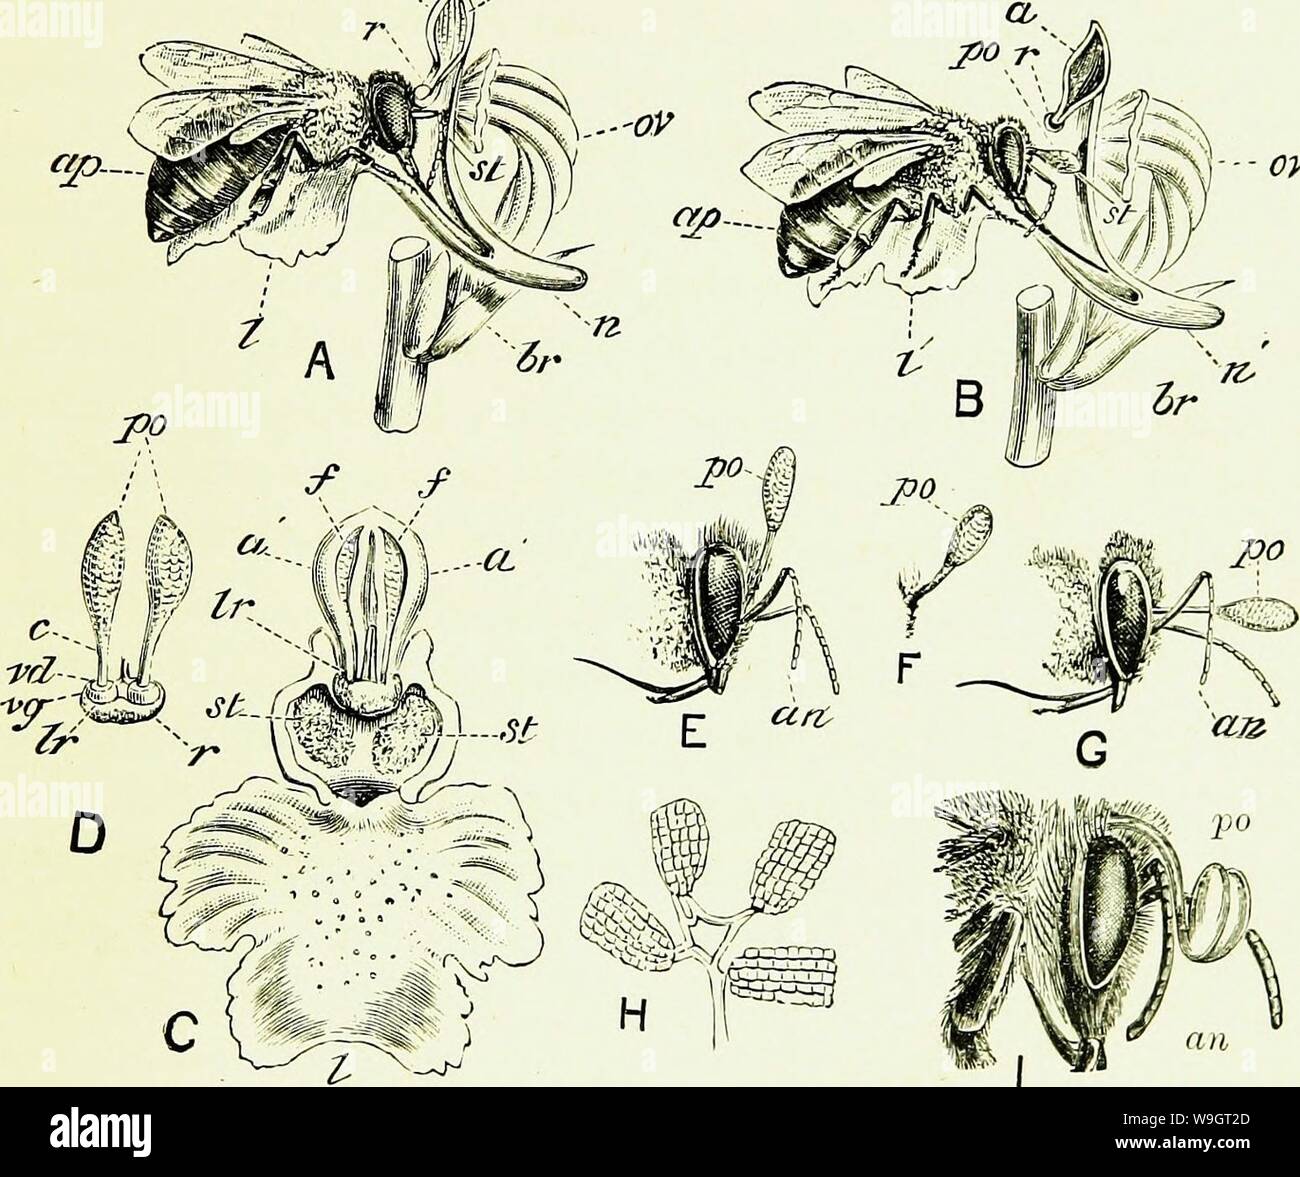 Archiv Bild ab Seite 342 von Bienen und Imkerei; wissenschaftliche und. Bienen & Imkerei; wissenschaftliche und praktische. Eine vollständige Abhandlung über die Anatomie, Physiologie, floralen Beziehungen, und rentablen Bewirtschaftung des Hives biene CUbiodiversity Jahr: 1886 1154323 (BIENEN ALS DÜNGEMITTEL. 315 belebenden Element (die Pollen), in Form von Granulat! In zwei Zellen gesammelt, hat hier eine eigentümliche Struktur seine Zellen sind zwei, aber sie sind so weit voneinander getrennt (a', A, C) als Fast zu erscheinen wie zwei getrennte Antheren; während die Pollen, die sie enthalten. coheres in Massen (pollinien, Po, D), zusammengehalten durch interne el Stockfoto